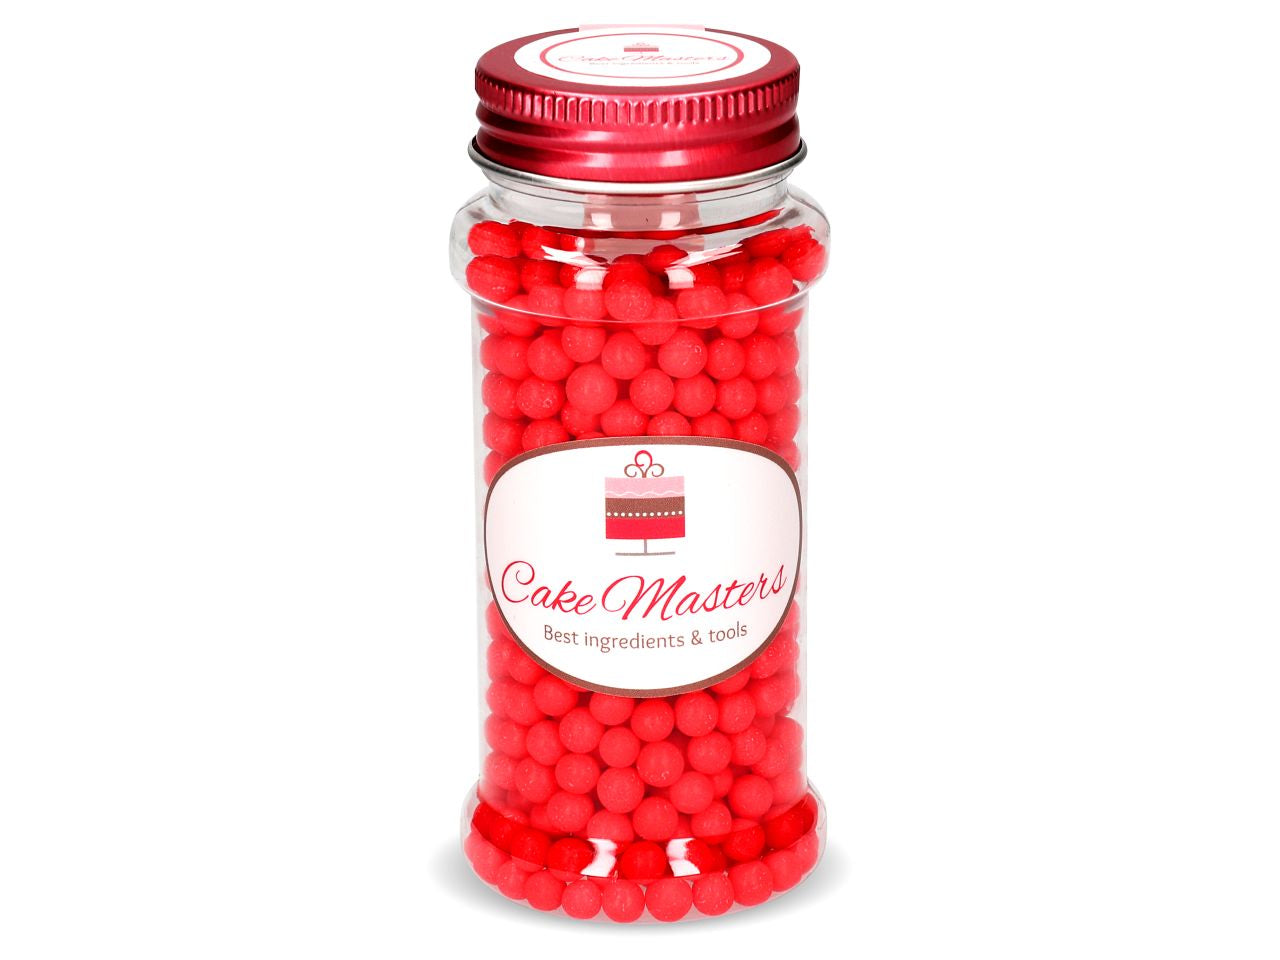 Zuckerpelren-rot-60g-Streusel-Mix-Perlen-Tortendeko-essbar